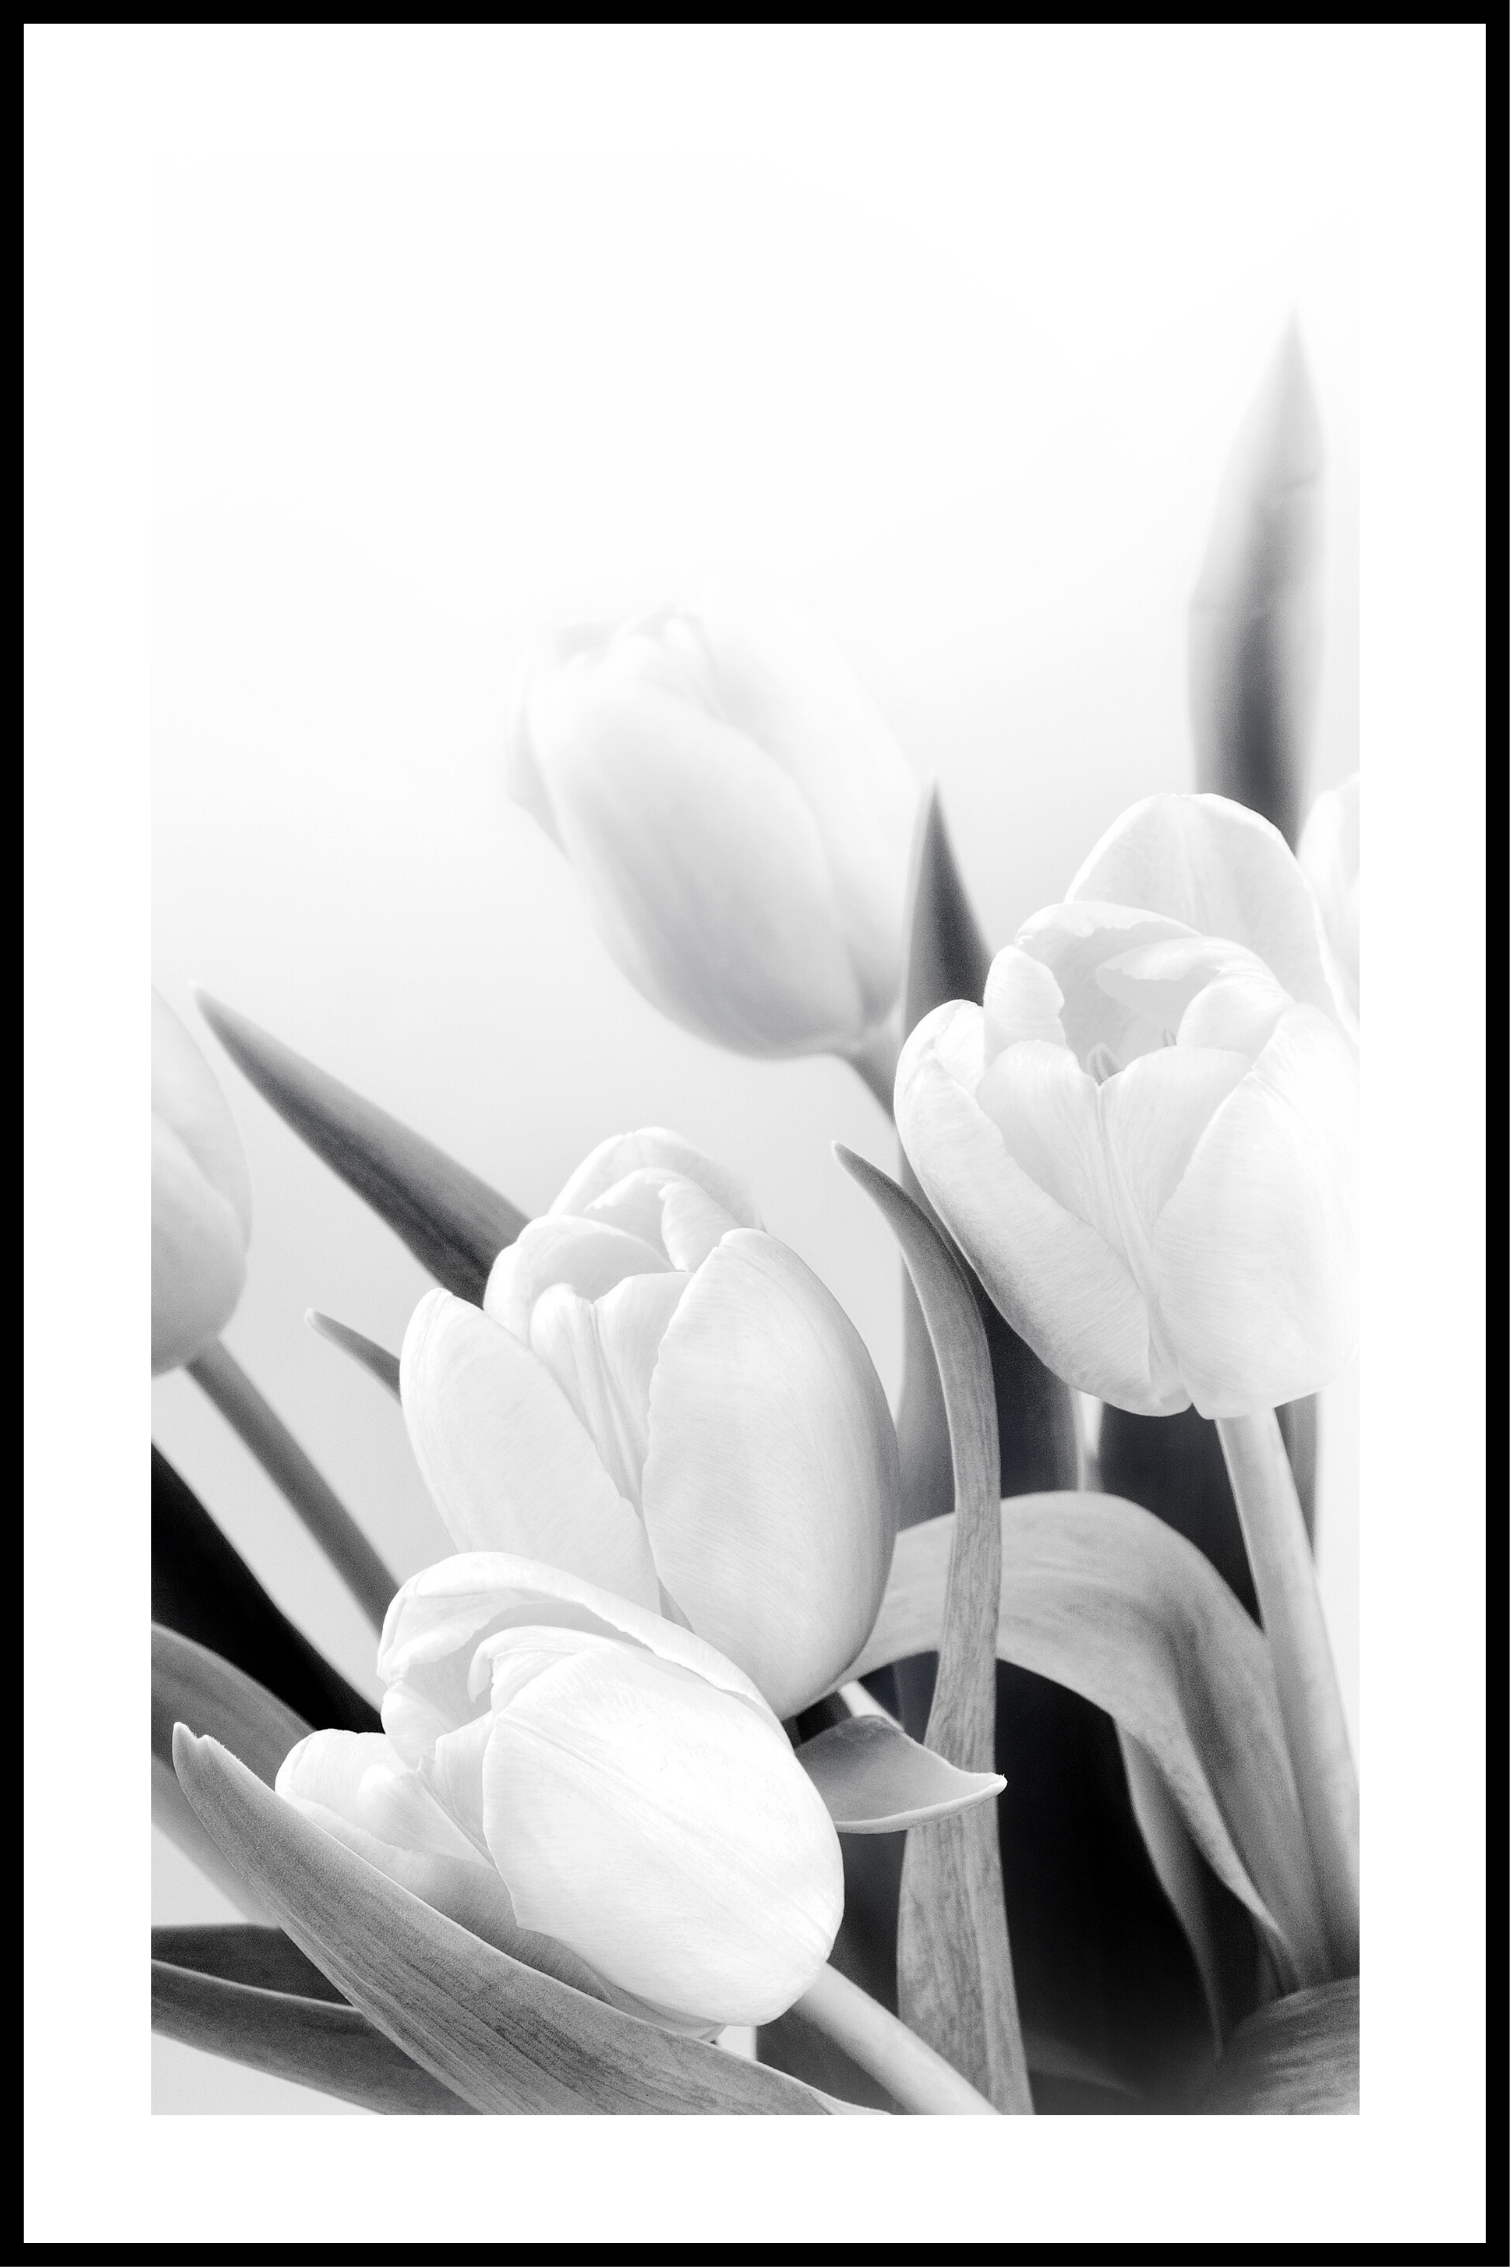 Blomster hvid og sort plakat